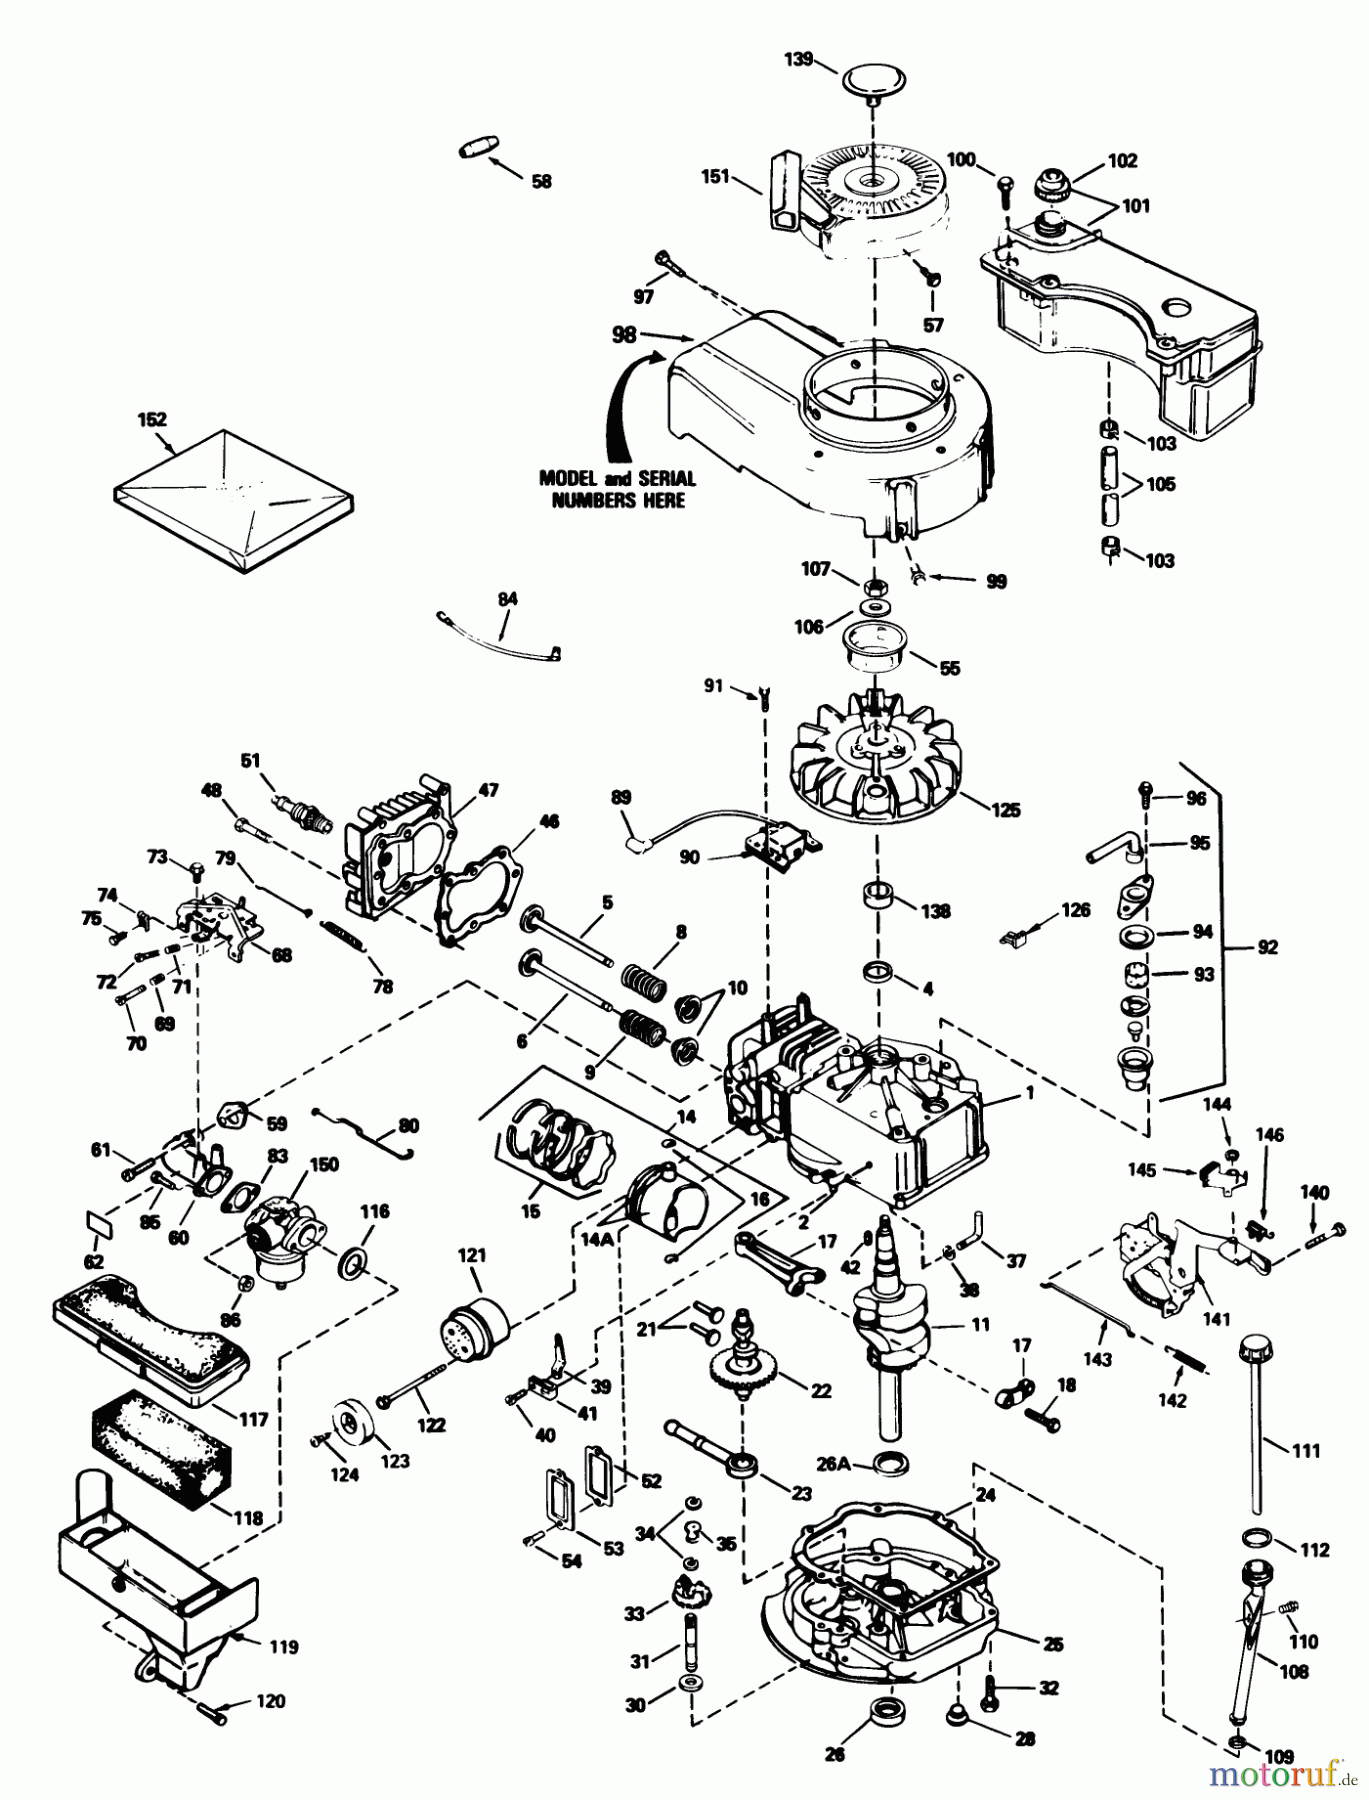  Toro Neu Mowers, Walk-Behind Seite 1 20588 - Toro Lawnmower, 1988 (8000001-8999999) ENGINE TECUMSEH MODEL NO. TVS100-44011B